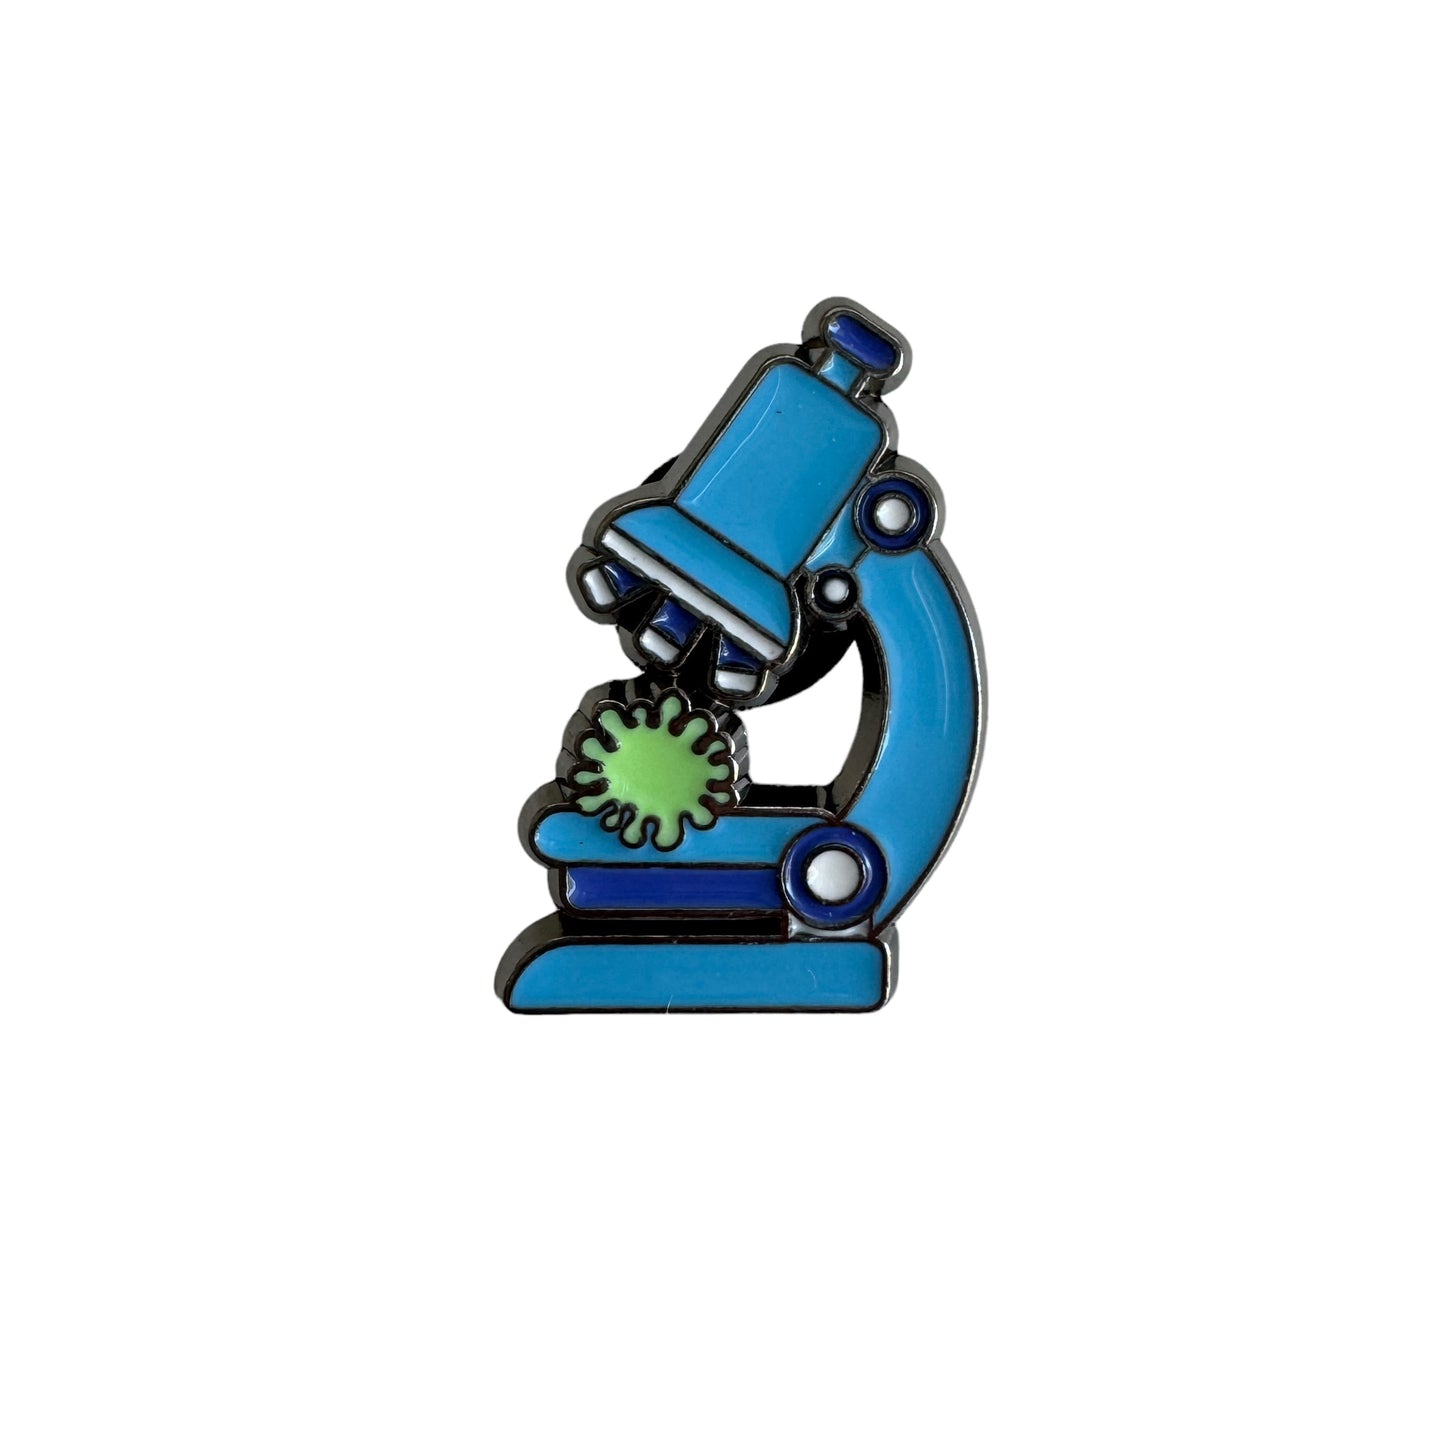 Pin — "Microscope"